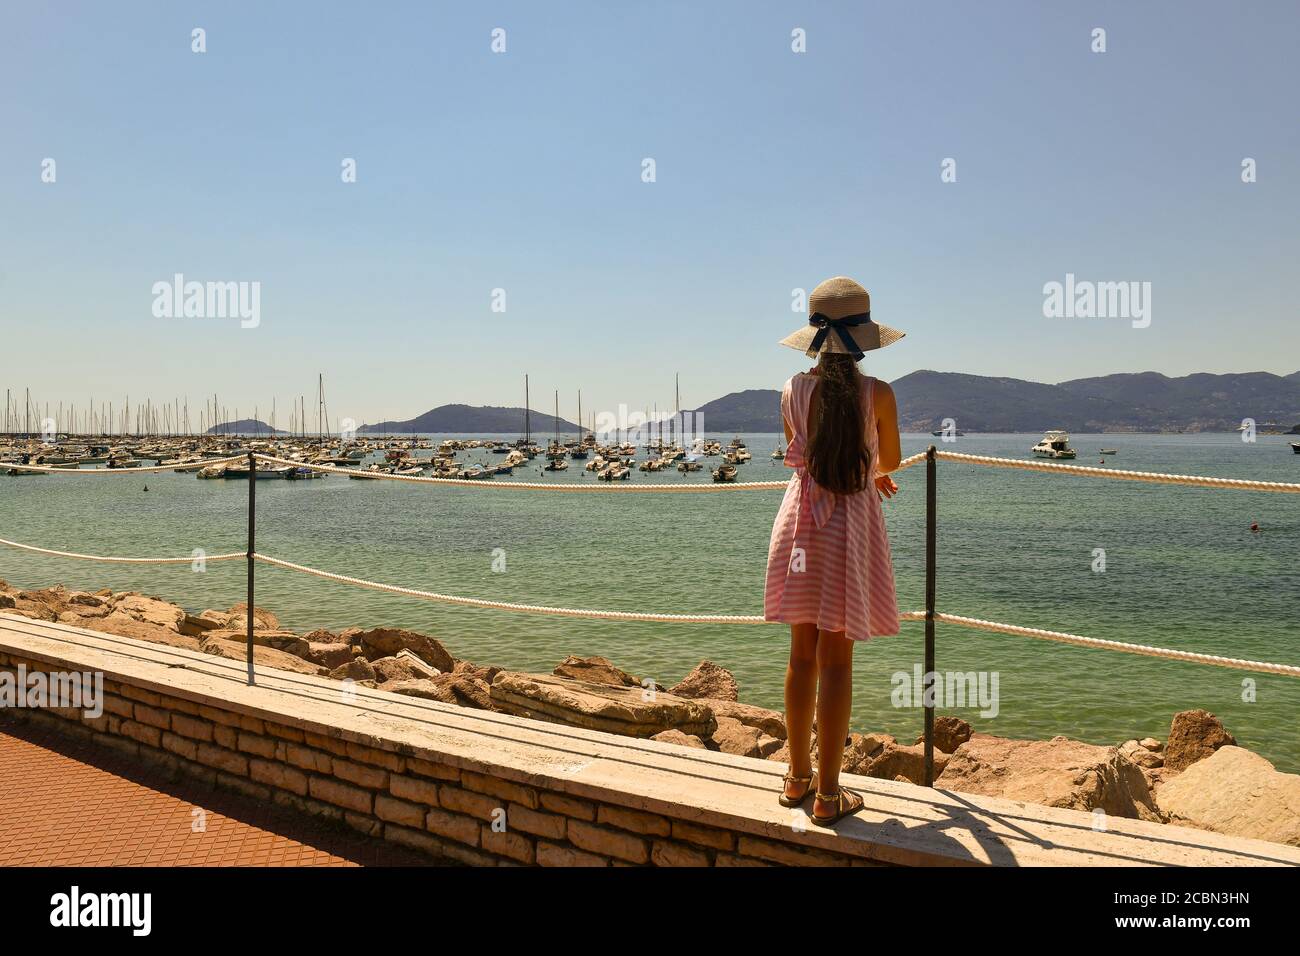 Une petite fille aux cheveux longs (9-10 ans) de derrière, admirant le golfe des poètes avec le promontoire de Porto Venere en été, Lerici, la Spezia, Italie Banque D'Images